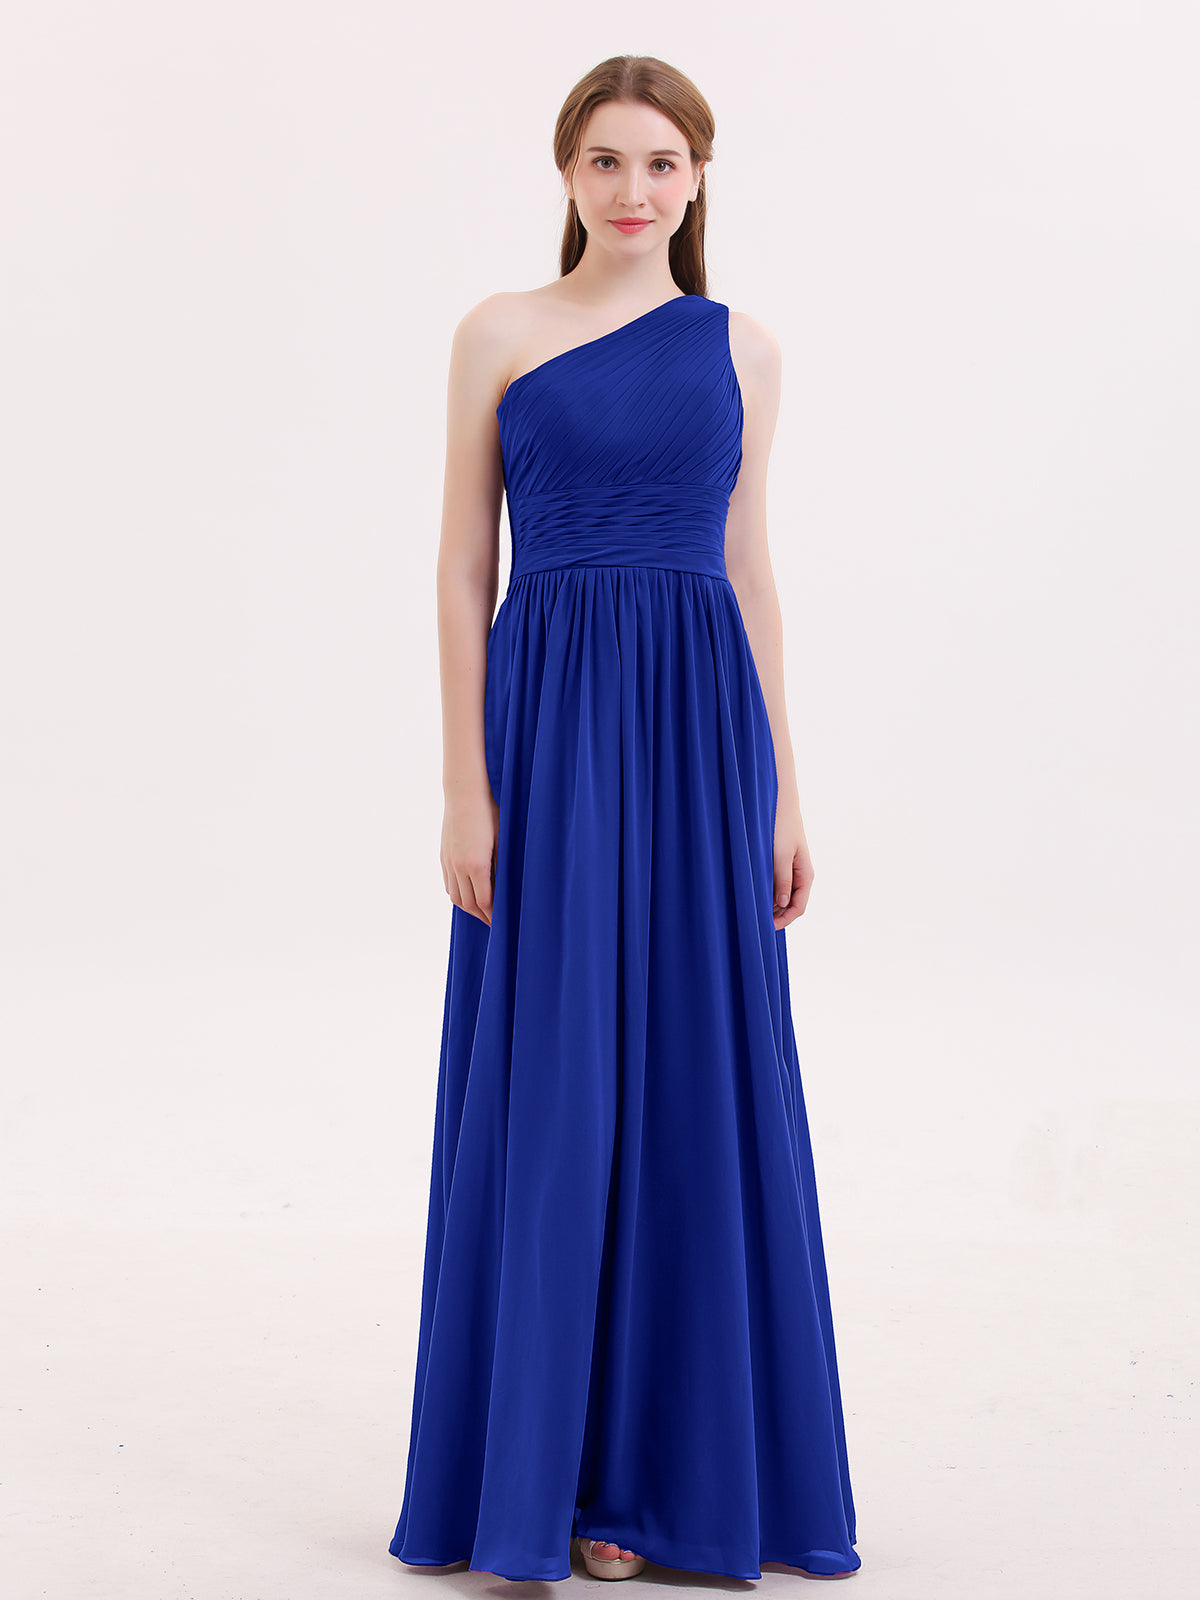 one shoulder royal blue dresses